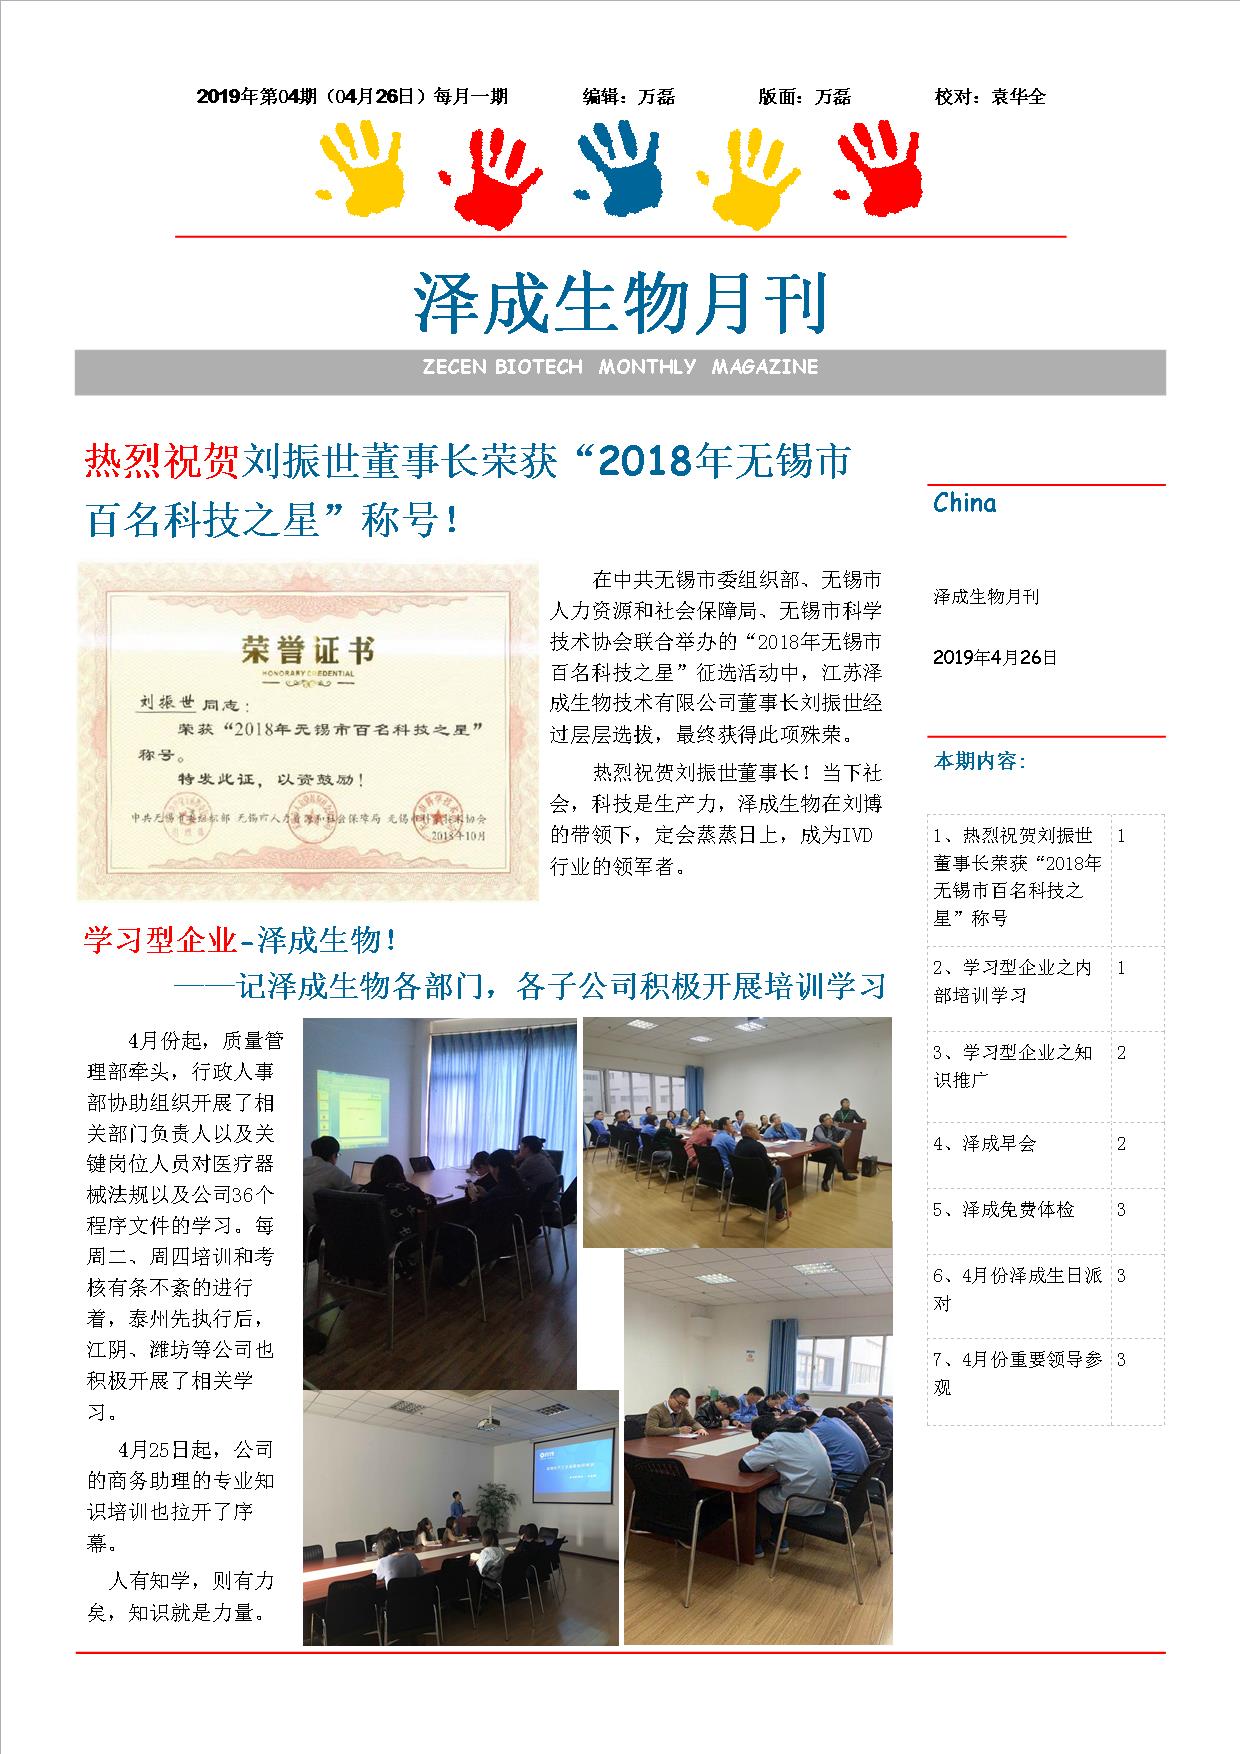 澤成(chéng)生物月刊2019年第04期